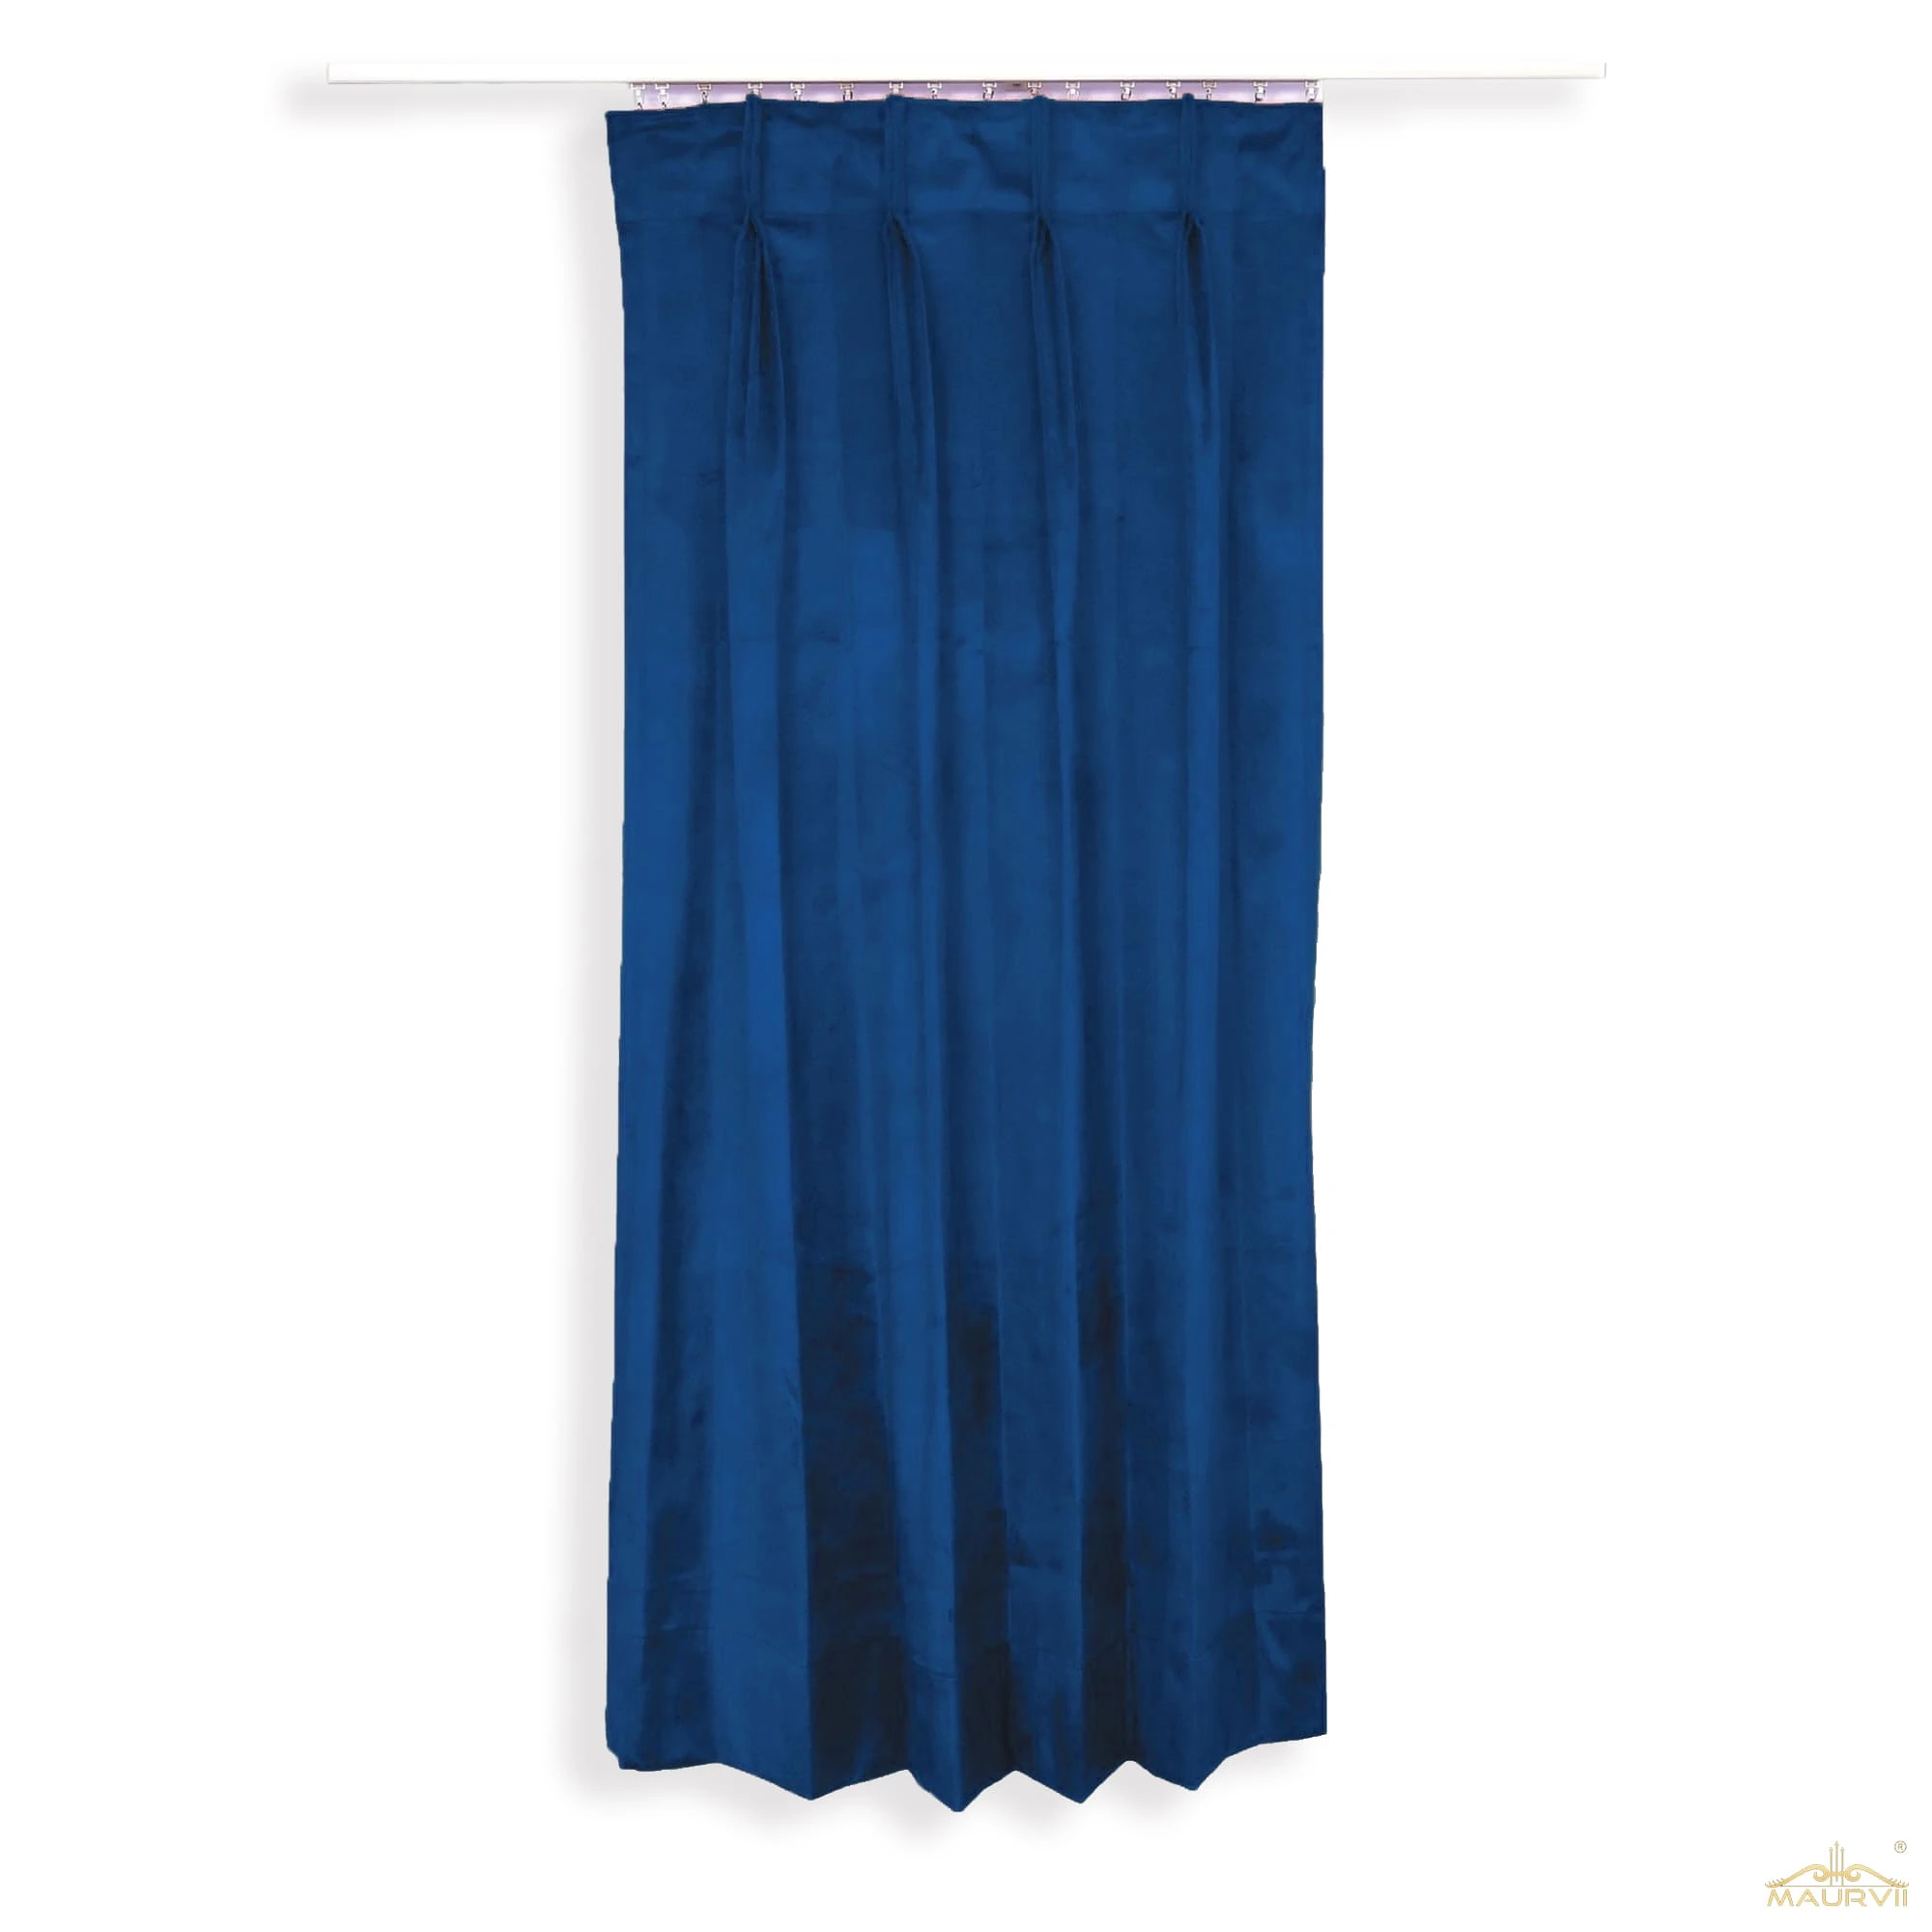 Blue color velvet drapes